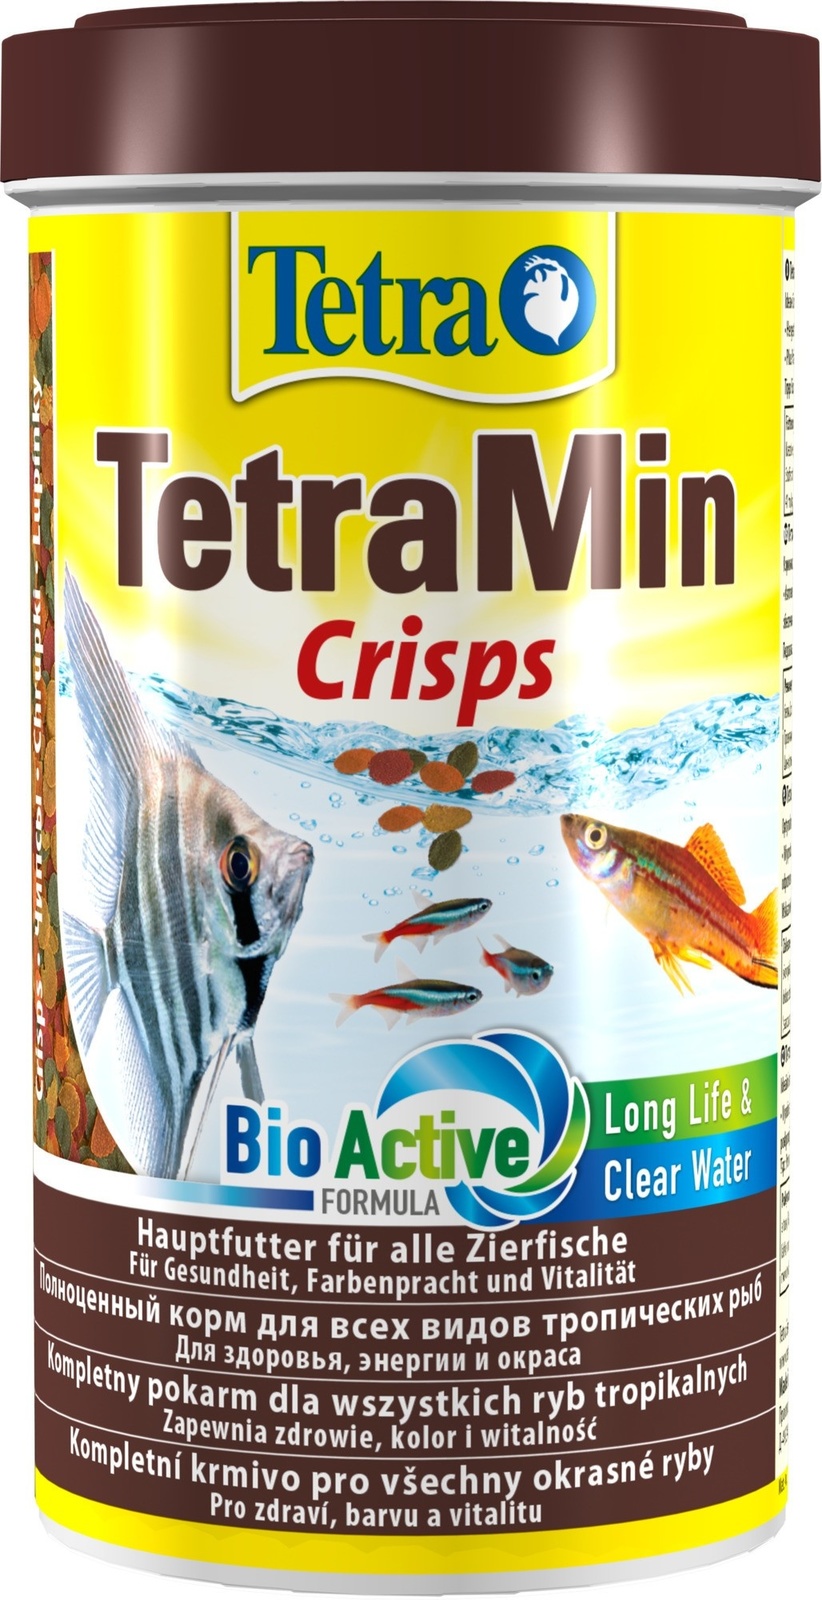 Tetra (корма) Tetra (корма) корм для всех видов тропических рыб, чипсы (110 г) tetra корма tetra корма корм для всех видов мелких рыб четыре вида корма 65 г